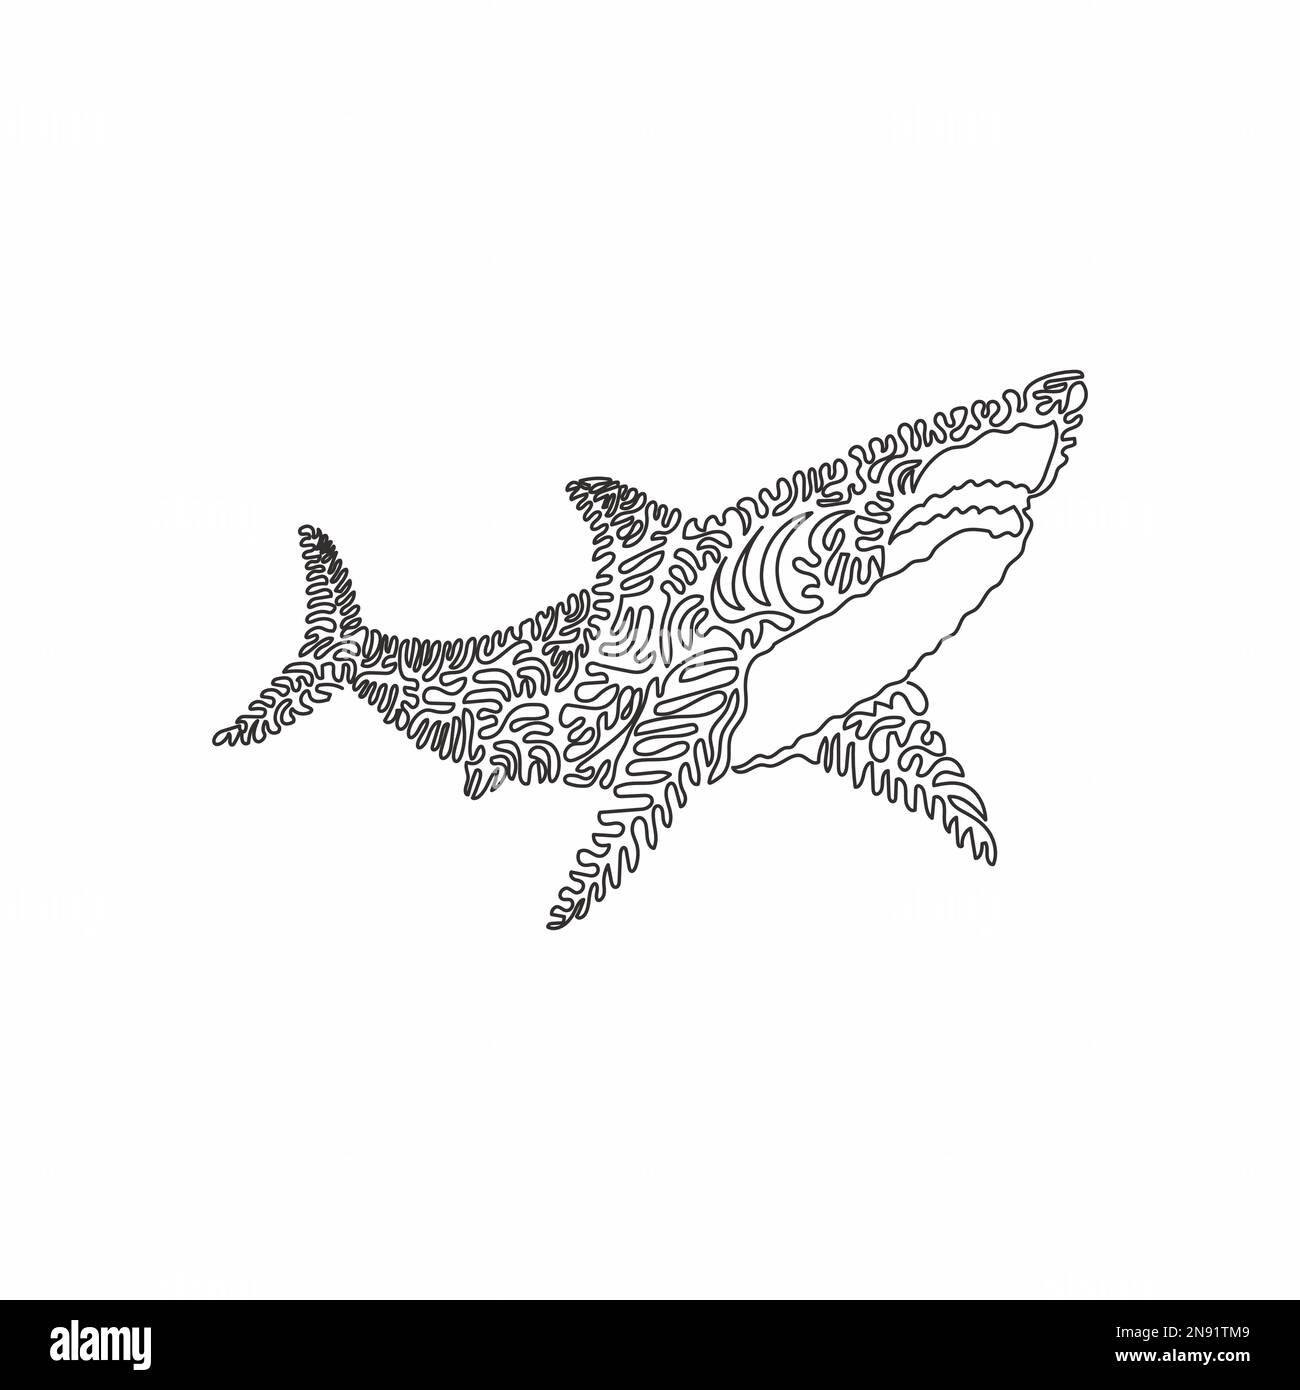 Disegno a linea singola di squalo spaventoso Disegno a linea continua disegno vettoriale illustrazione di squalo marino predatore per icona Illustrazione Vettoriale